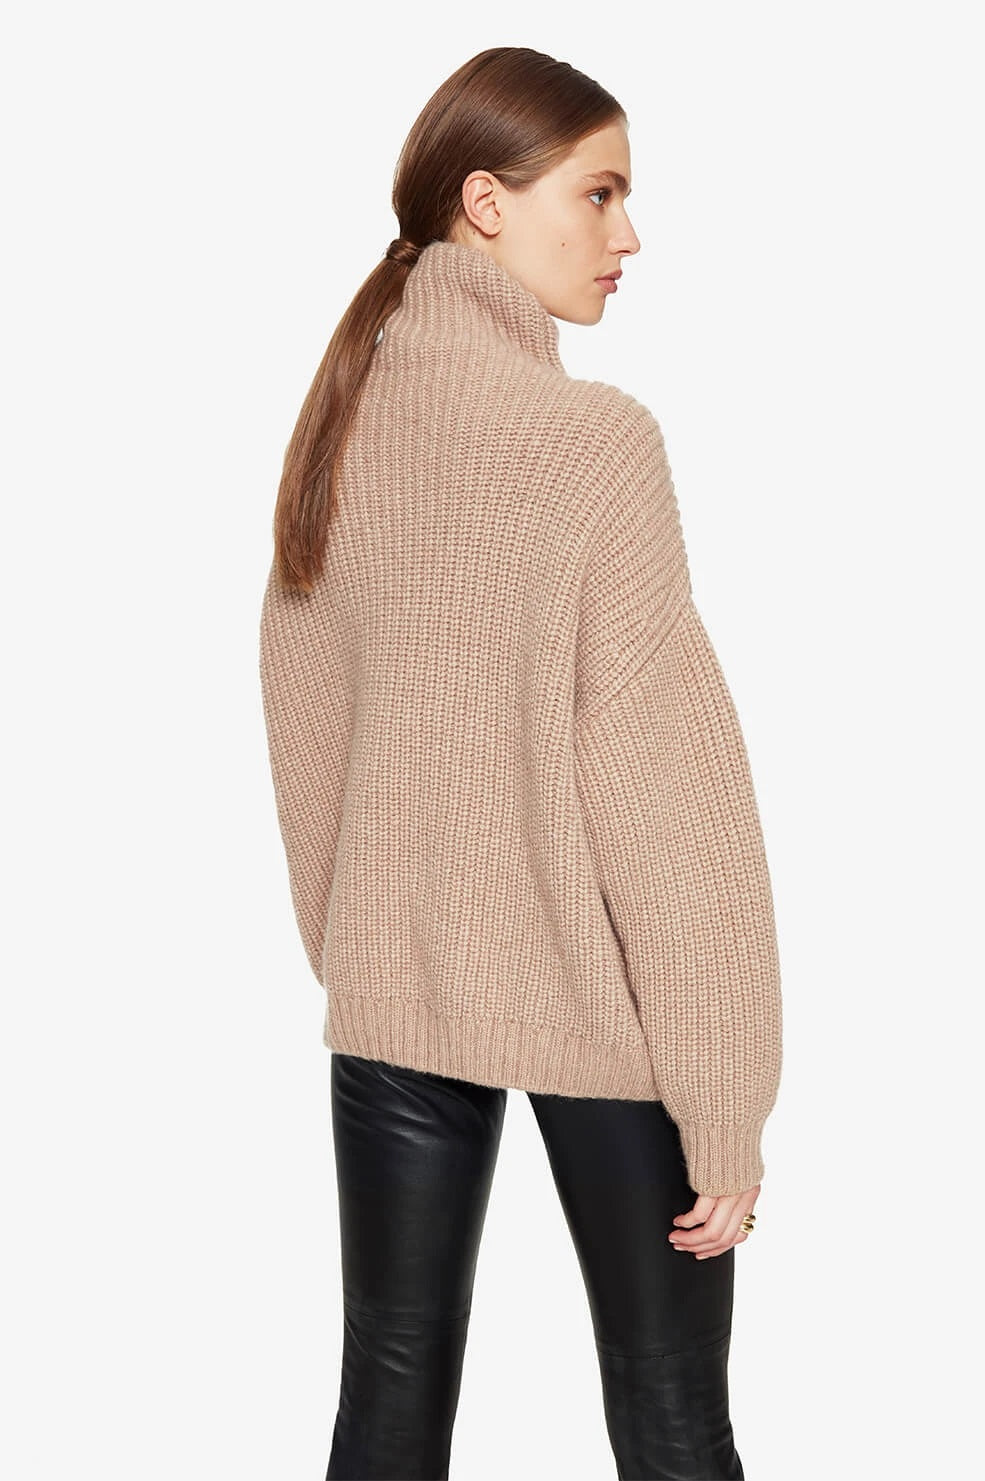 Anine Bing - Sydney Sweater in Camel